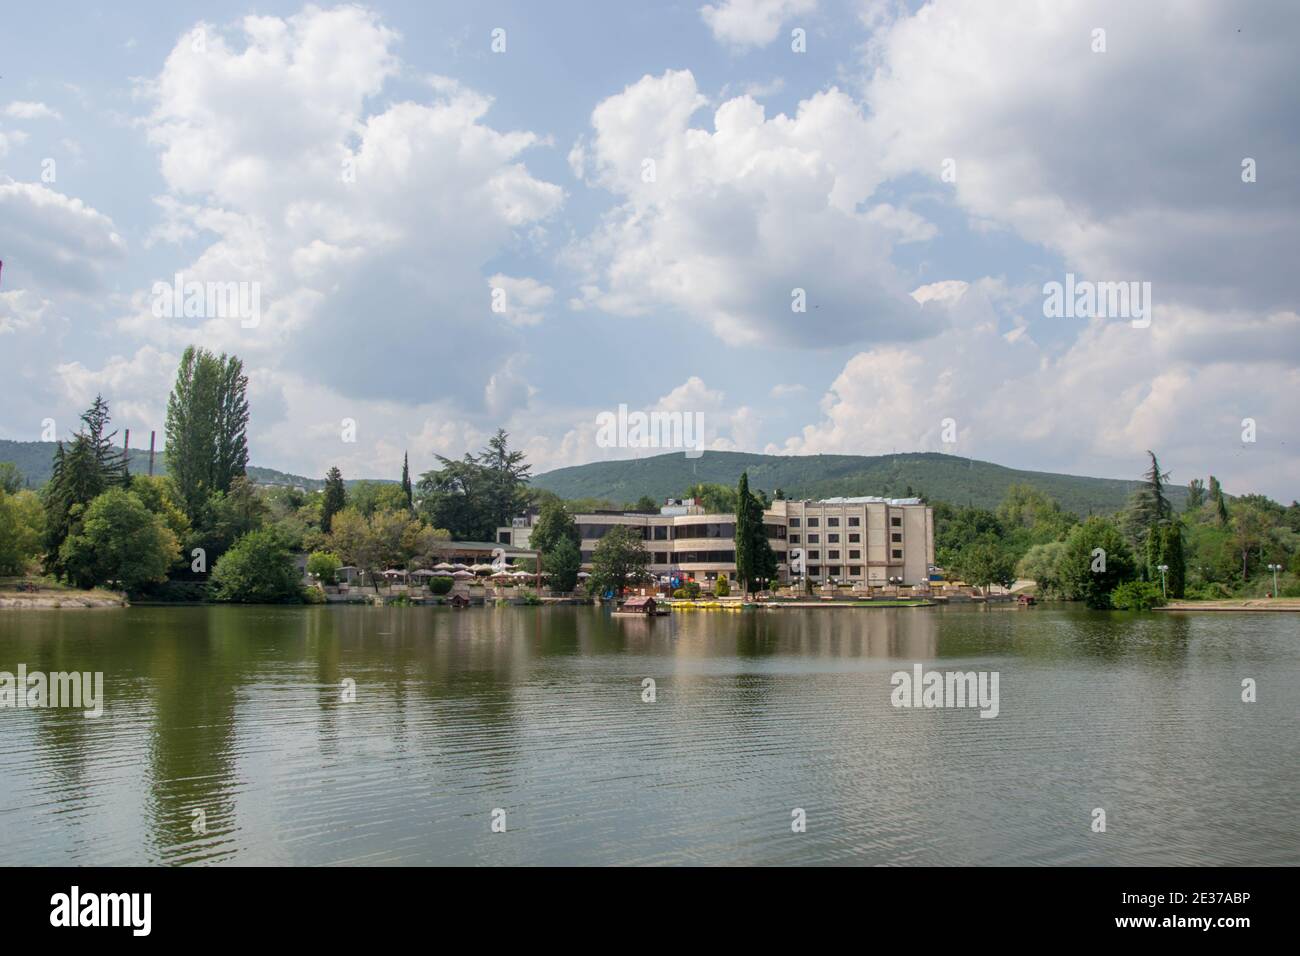 Schöne friedliche Natur, Bäume und Pflanzen auf einem See, Gebäude unter den Bäumen, Sommersaison, Reflexion im Wasser, Zagorka See, Stara Zag Stockfoto